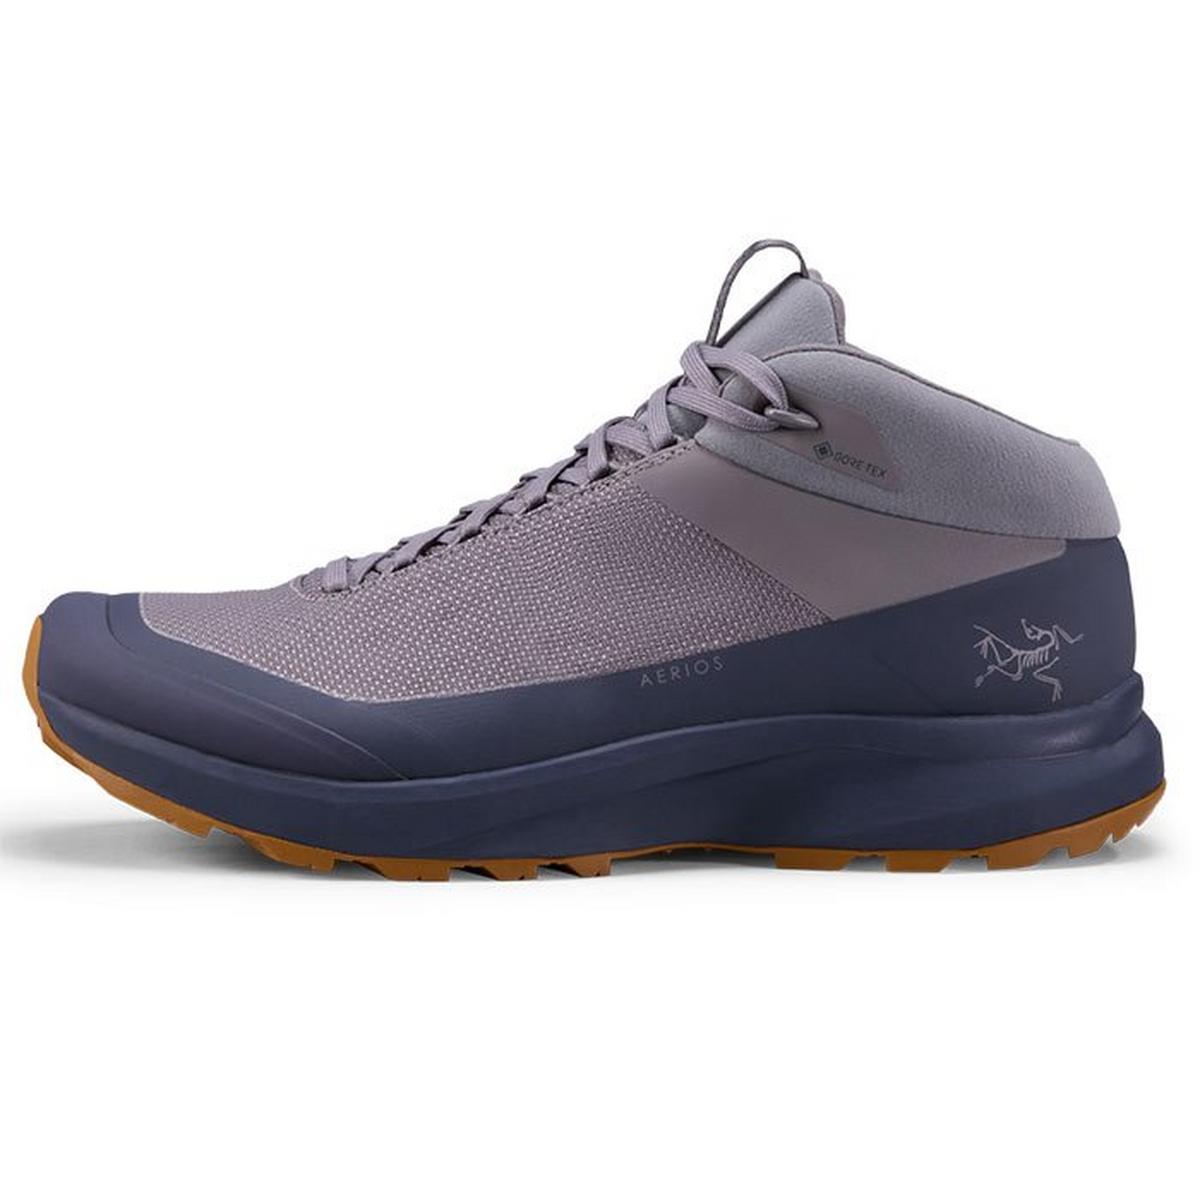 Chaussures de randonnée Aerios FL 2 Mid GTX pour hommes